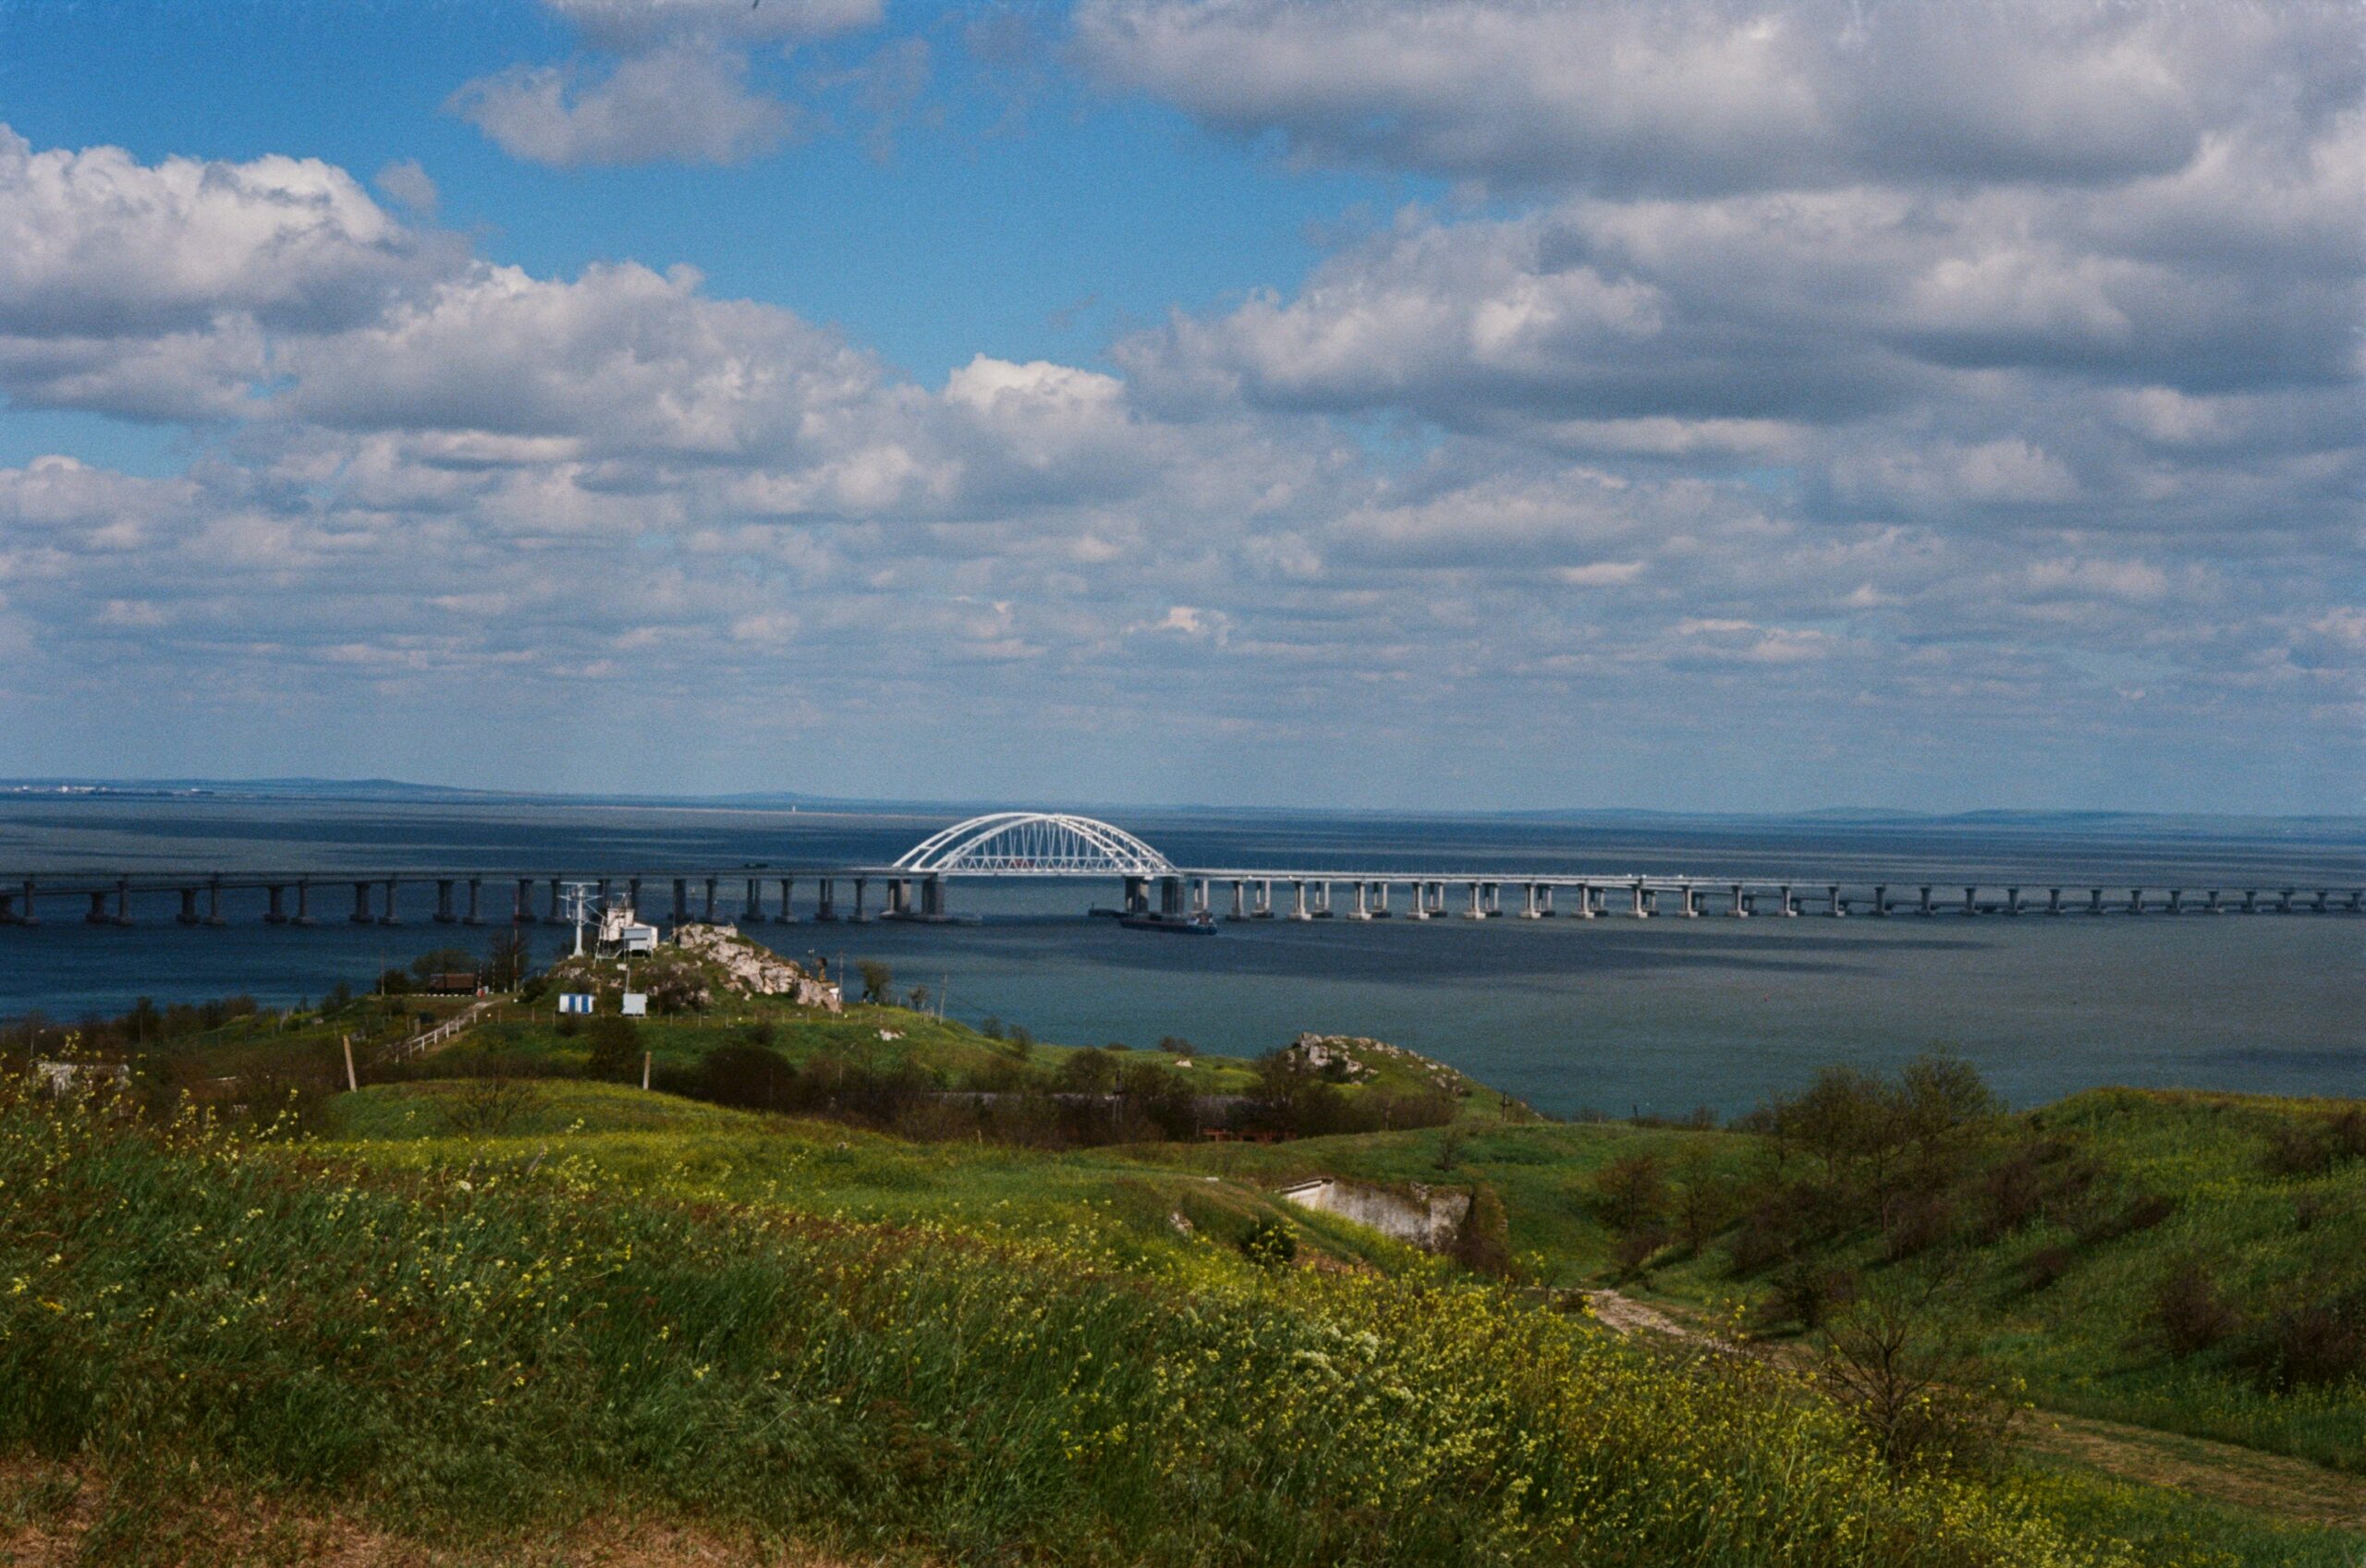 Открытый в 2018 году Крымский мост позволял туристам из России ездить в Крым в обход украинской территории. А сейчас это важнейшая стратегическая артерия: в одну сторону через Керченский пролив идут войска и техника, в другую - беженцы с юга Украины. 9 мая 2021, крепость Керчь. Svetlov Artem, WIkimedia commons